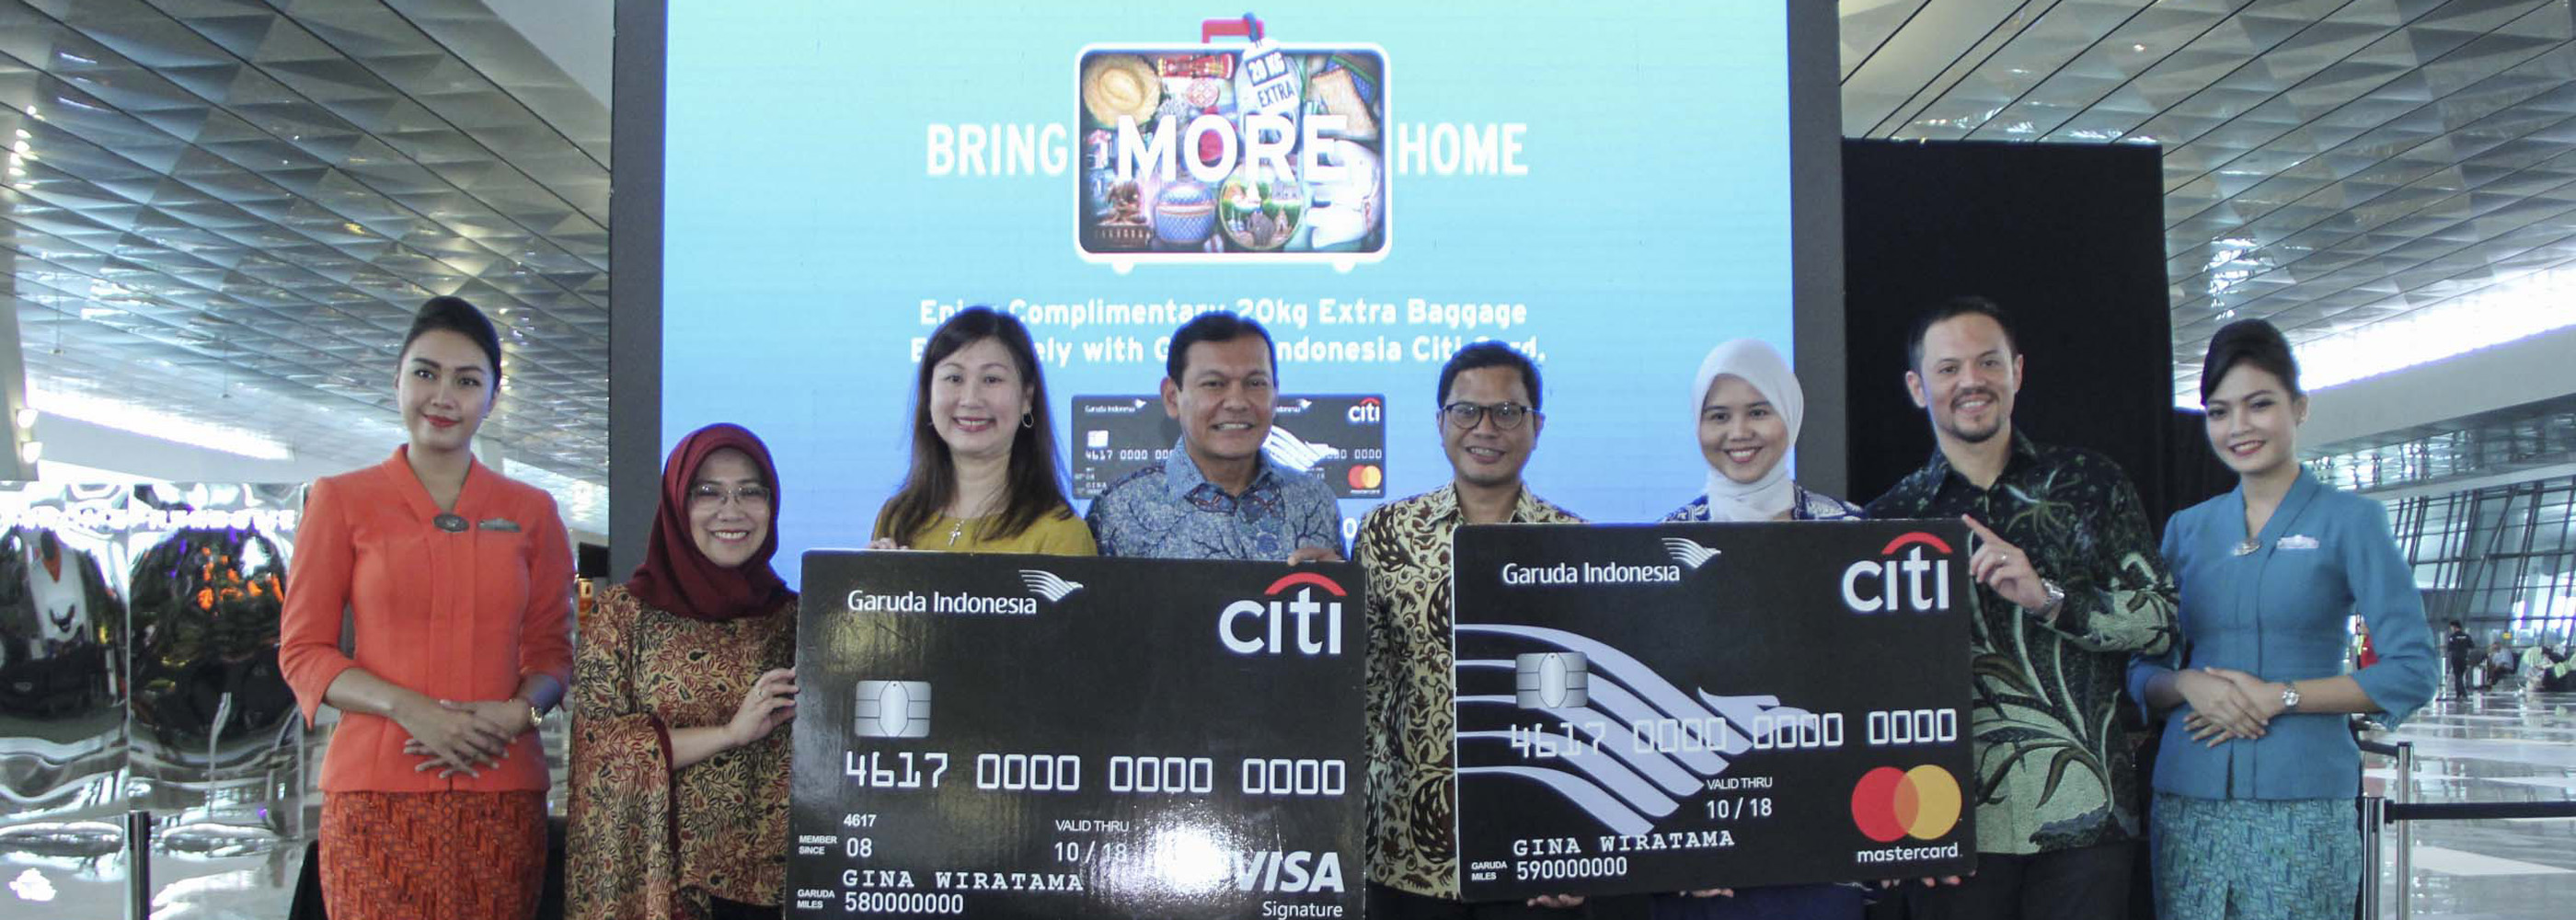 Tingkatkan Benefit Bagi Pemegang Garuda Indonesia Citi Card, Citi Indonesia dan Garuda Indonesia Perkenalkan Kampanye "Bring More Home"